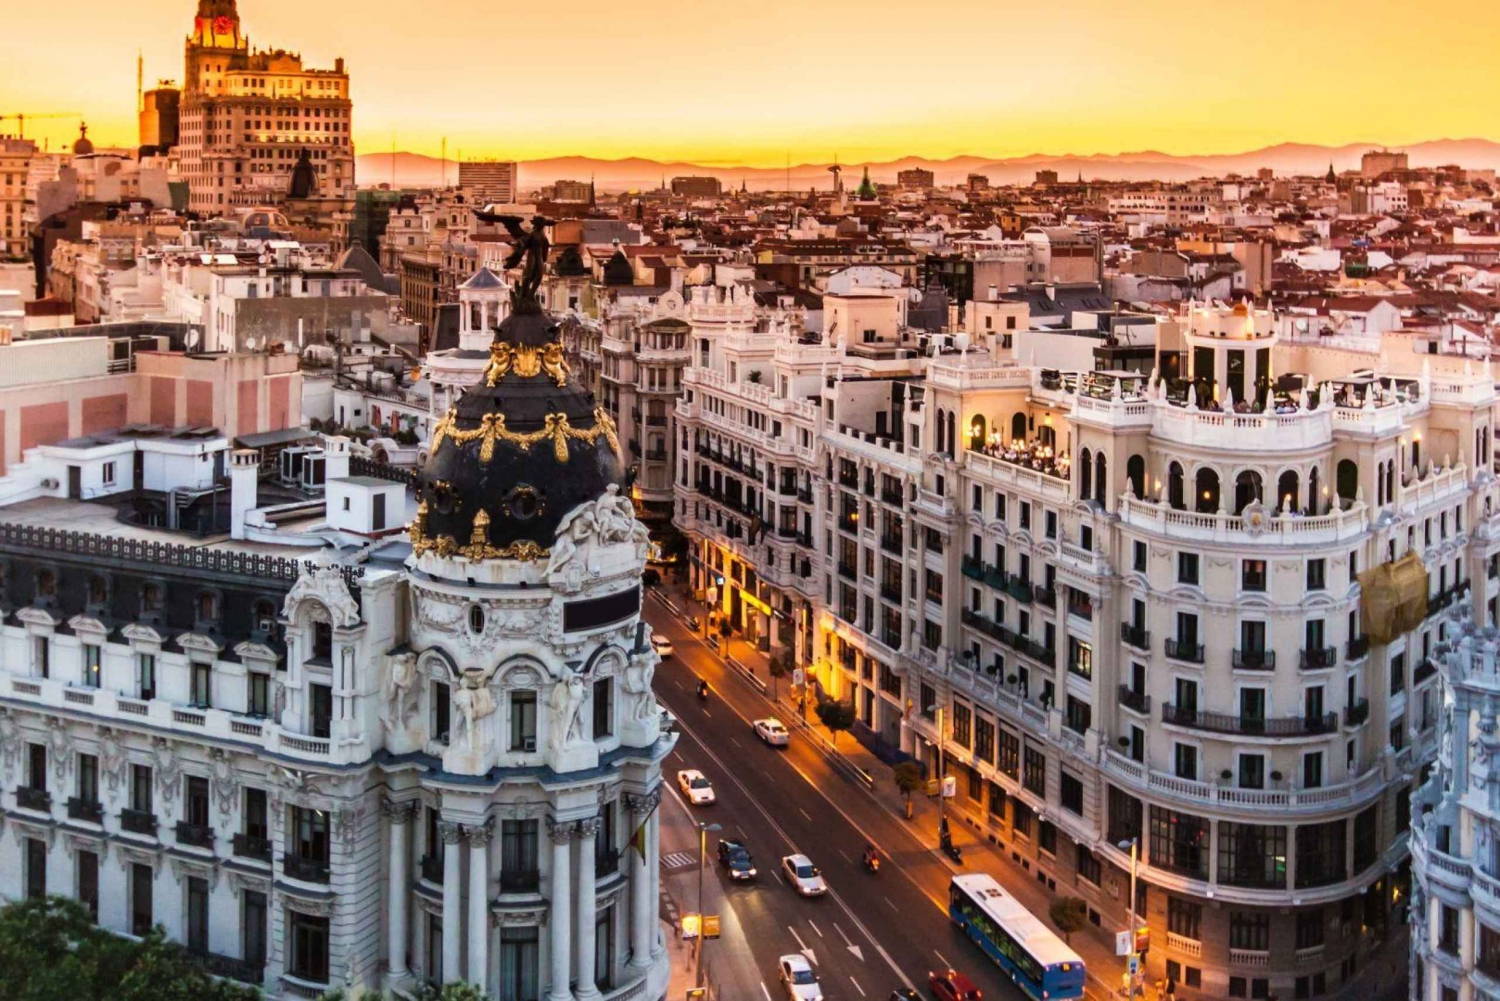 Madrid : Røveri i byen Outdoor Escape Game